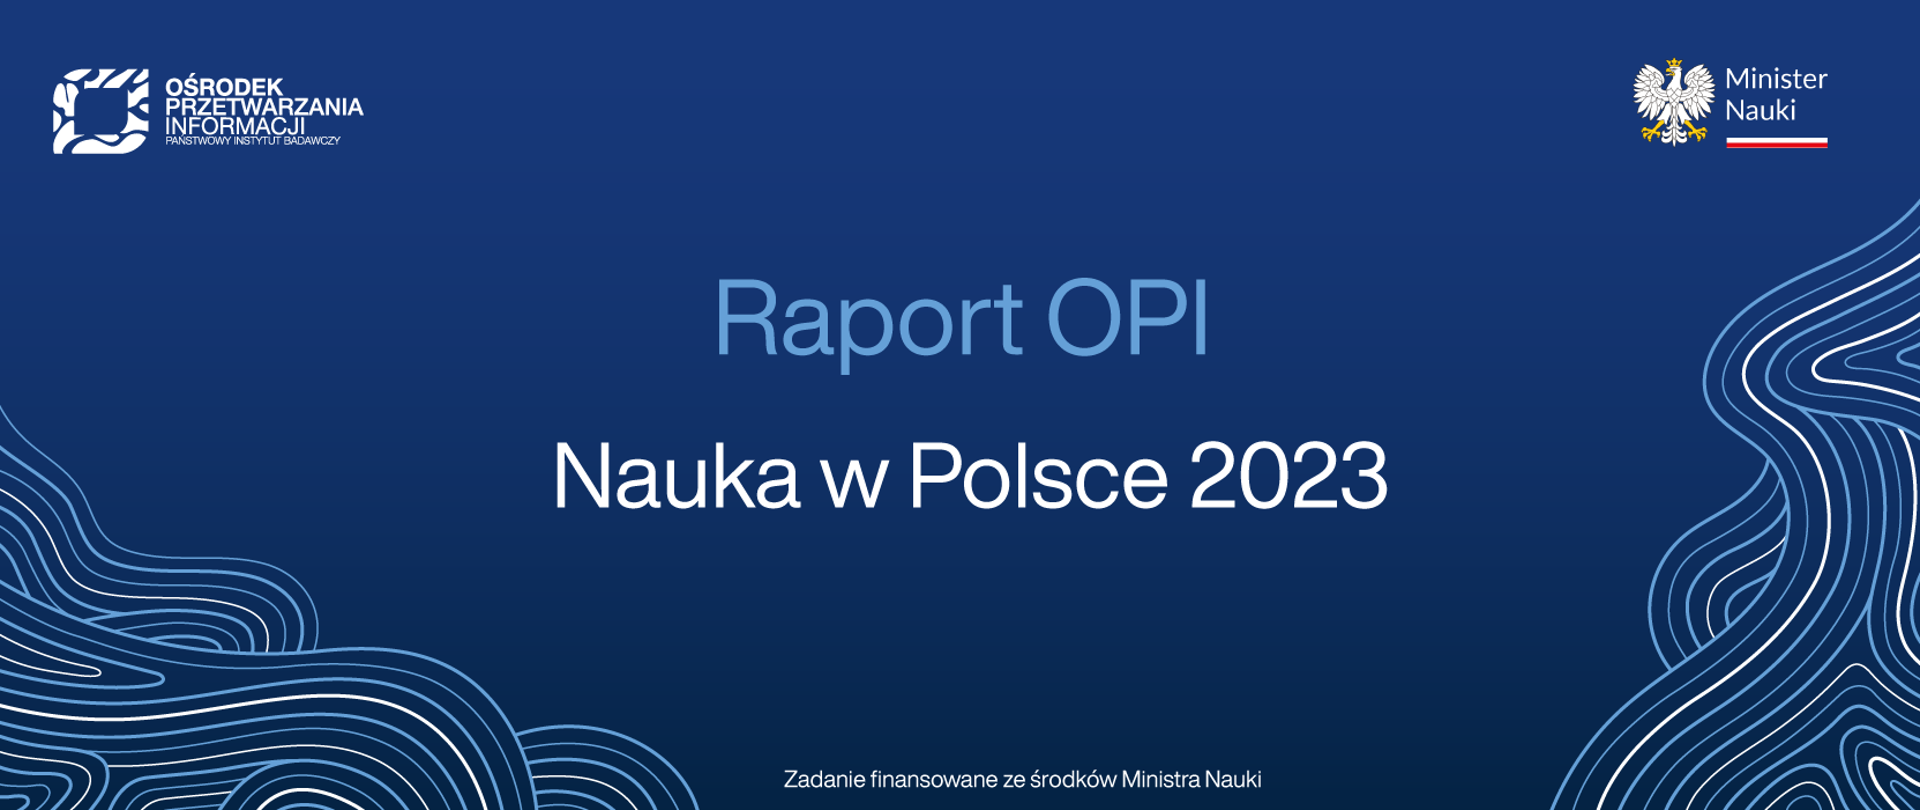 Grafika na niebieskim tle napis Raport OPI - nauka w Polsce 2023.